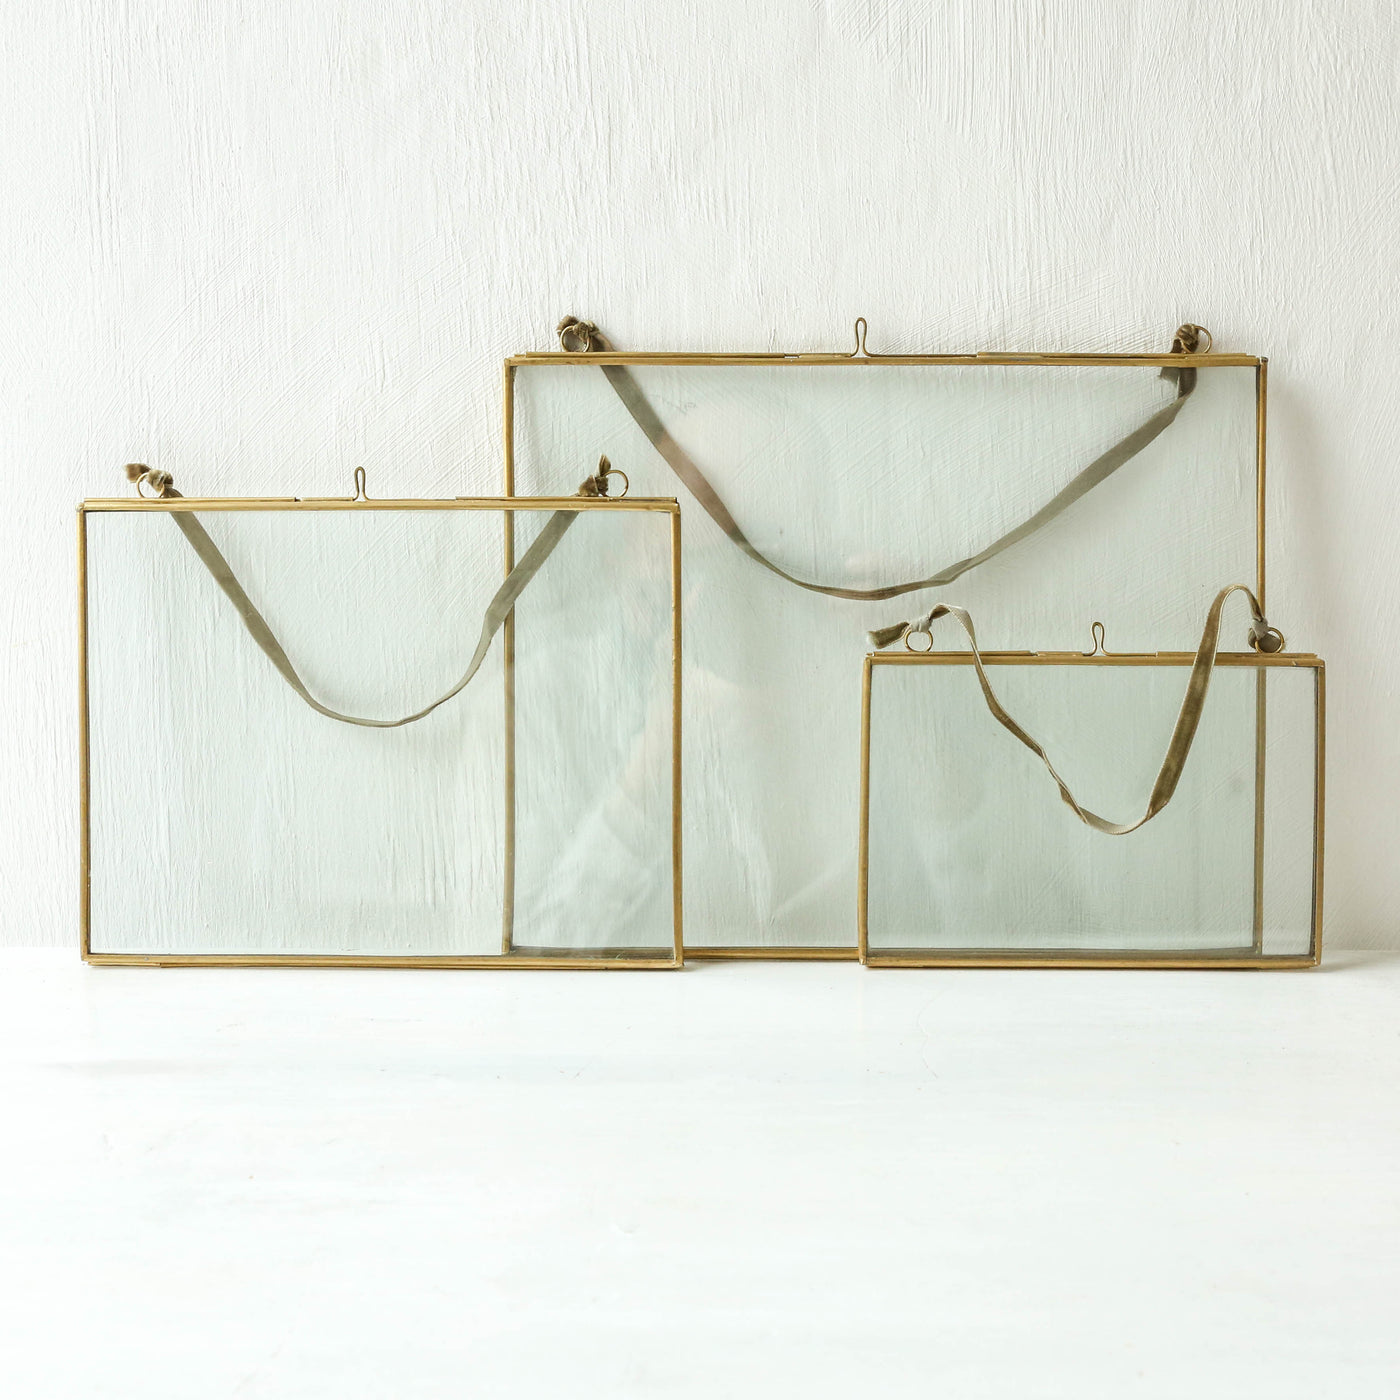 Hanging Brass Frame - Landscape 10 x 15cm